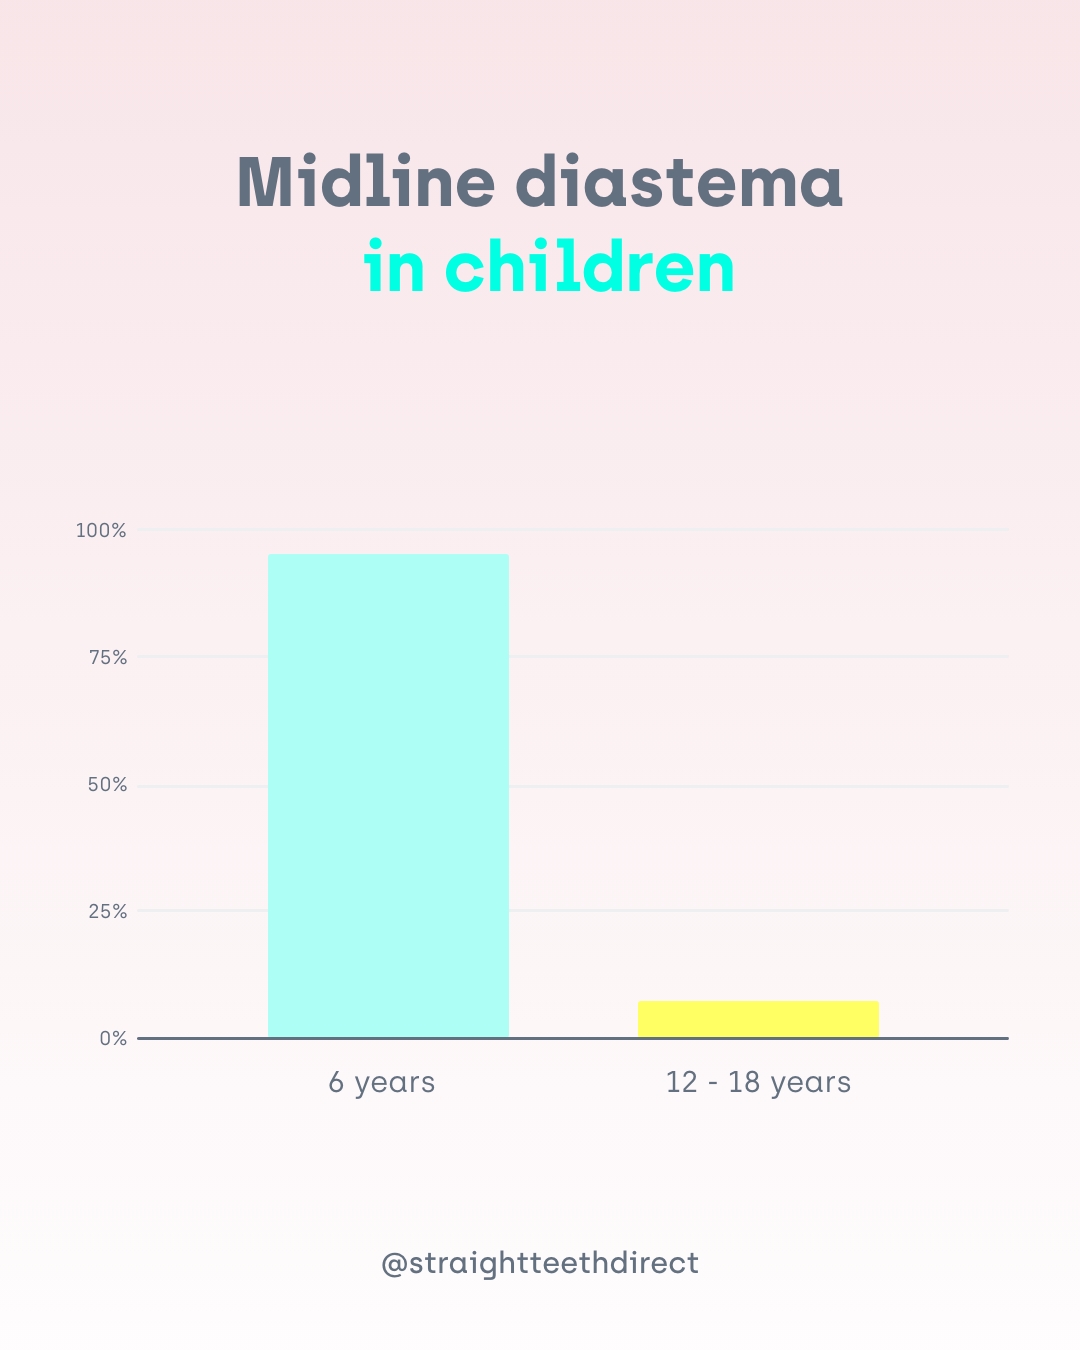 Midline diastema in children